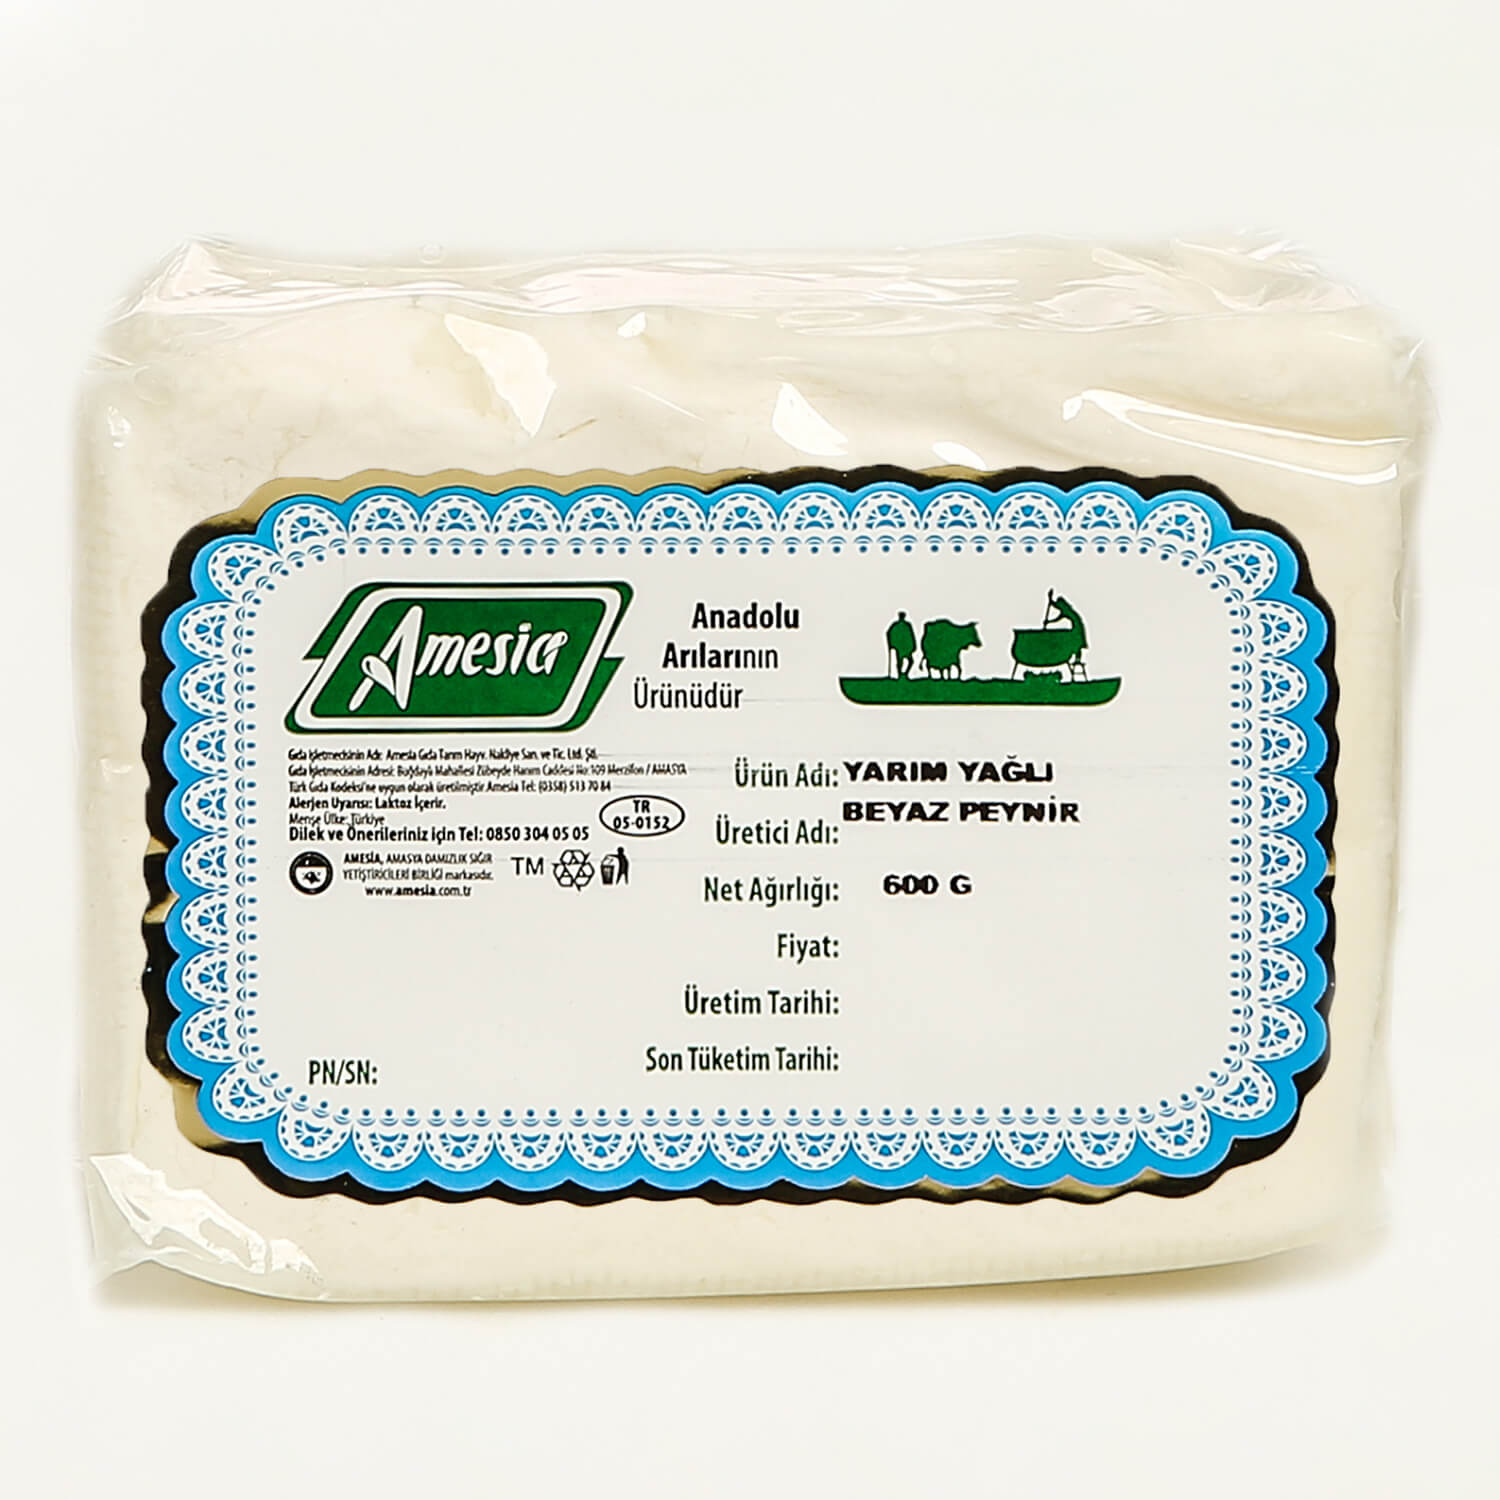 Yarım Yağlı Beyaz Peynir 600 G.